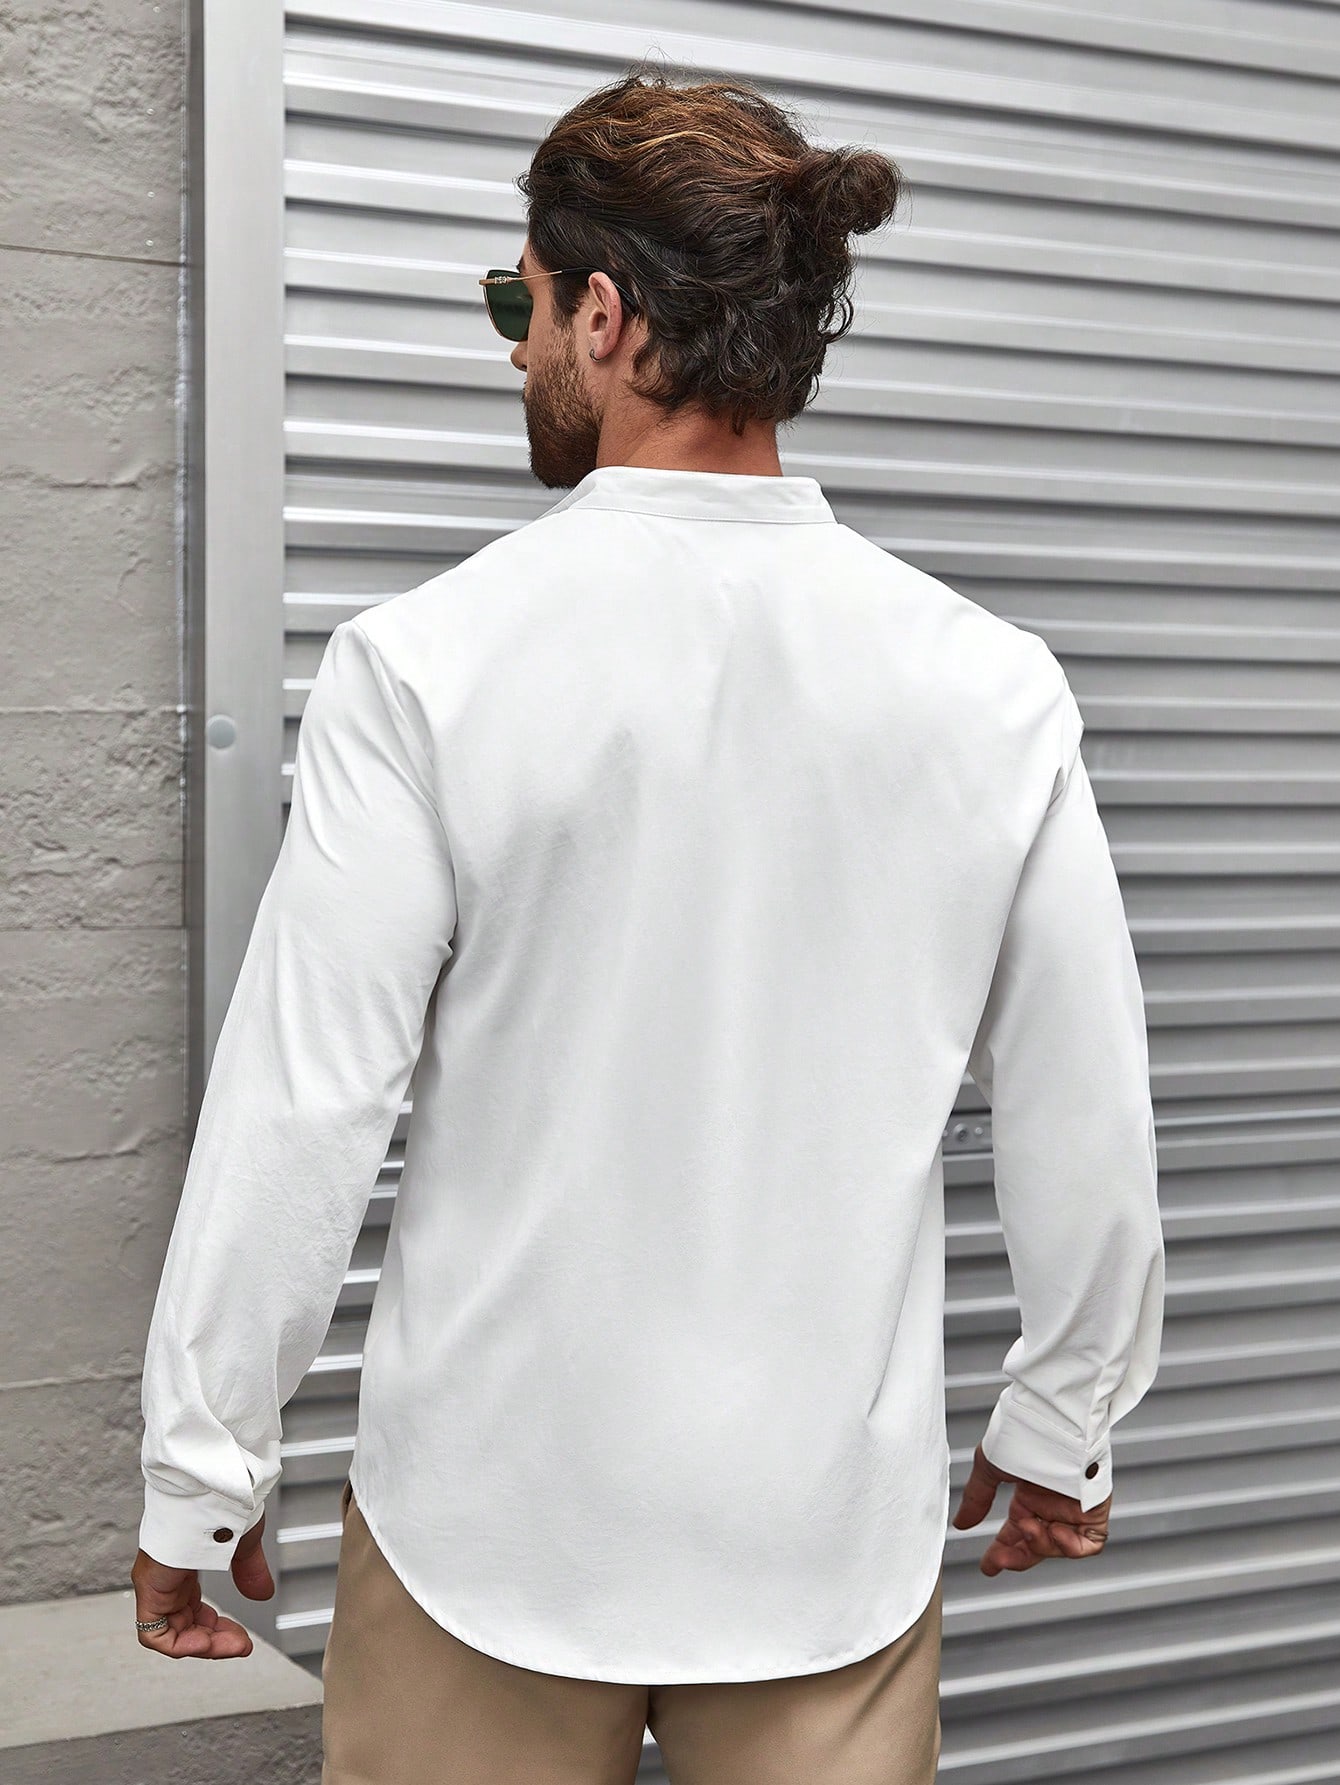 Мужская рубашка с воротником-стойкой и длинным рукавом Manfinity Homme, белый